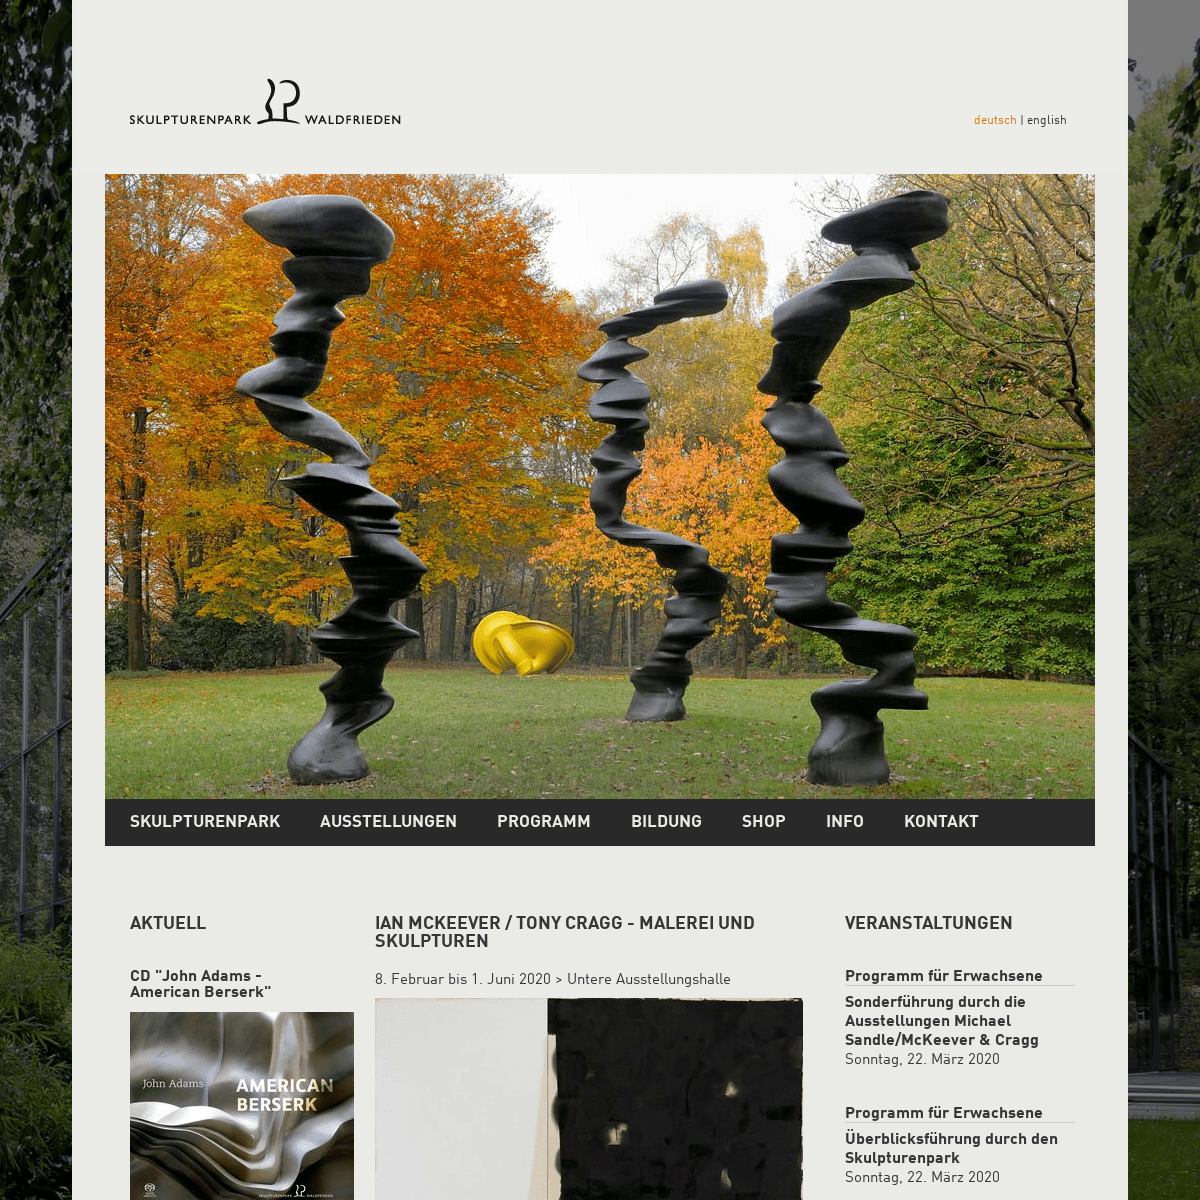 A complete backup of skulpturenpark-waldfrieden.de